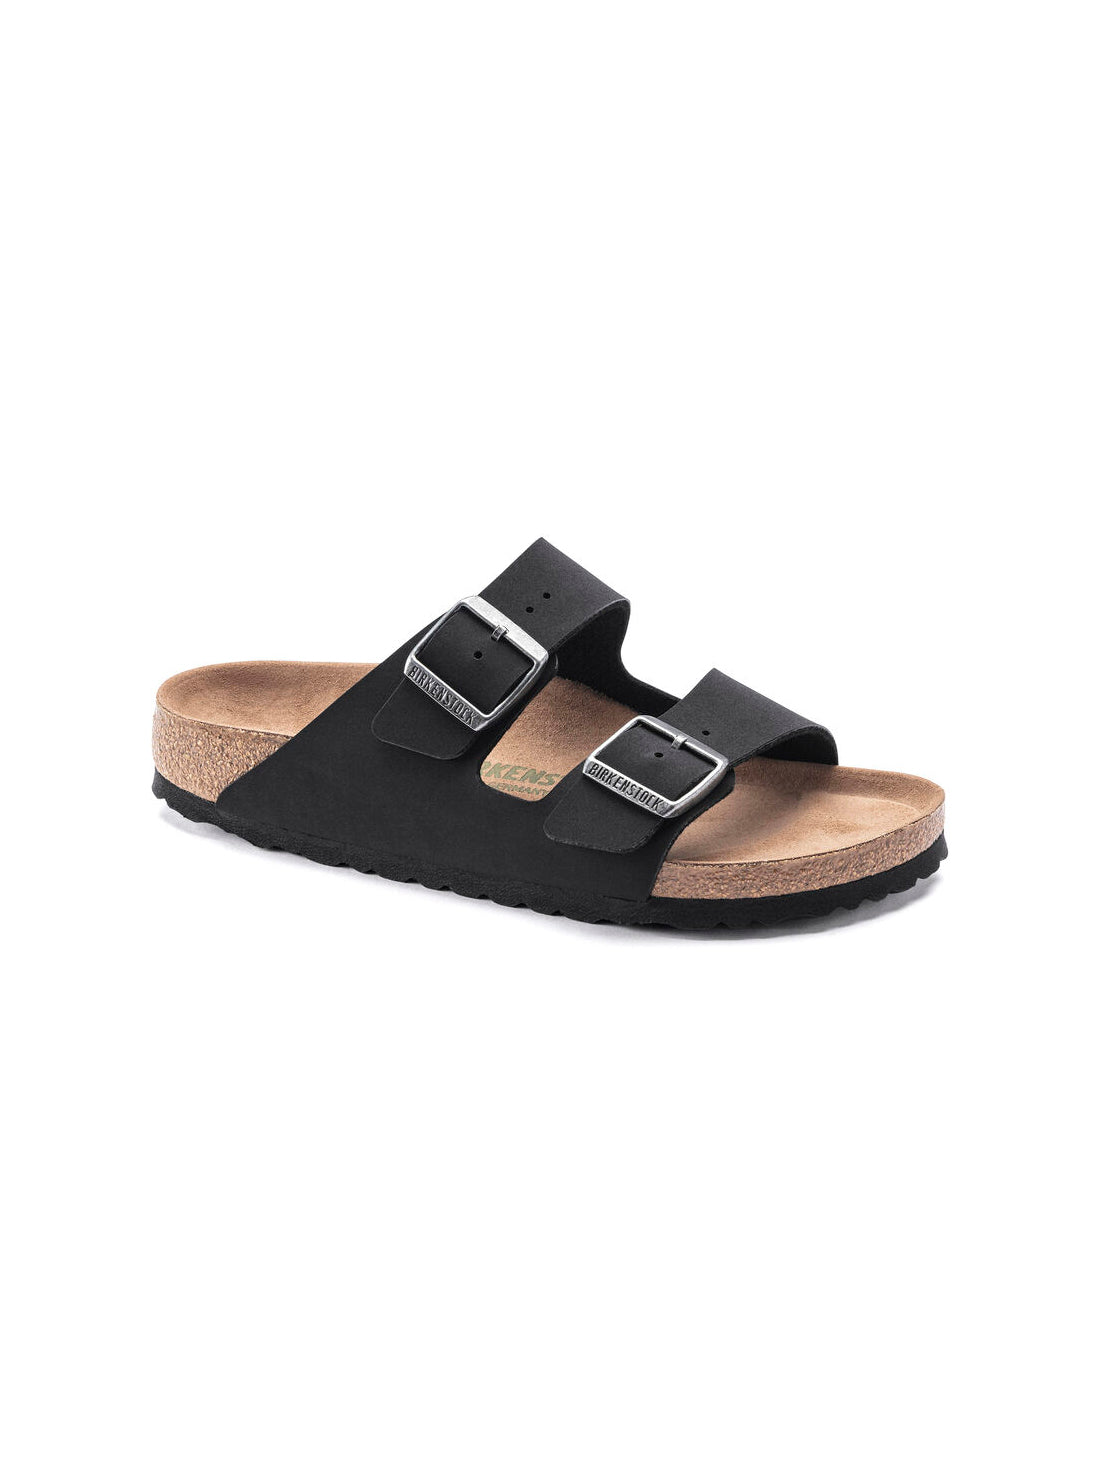 birkenstock arizona sandal in black vegan birkibuc